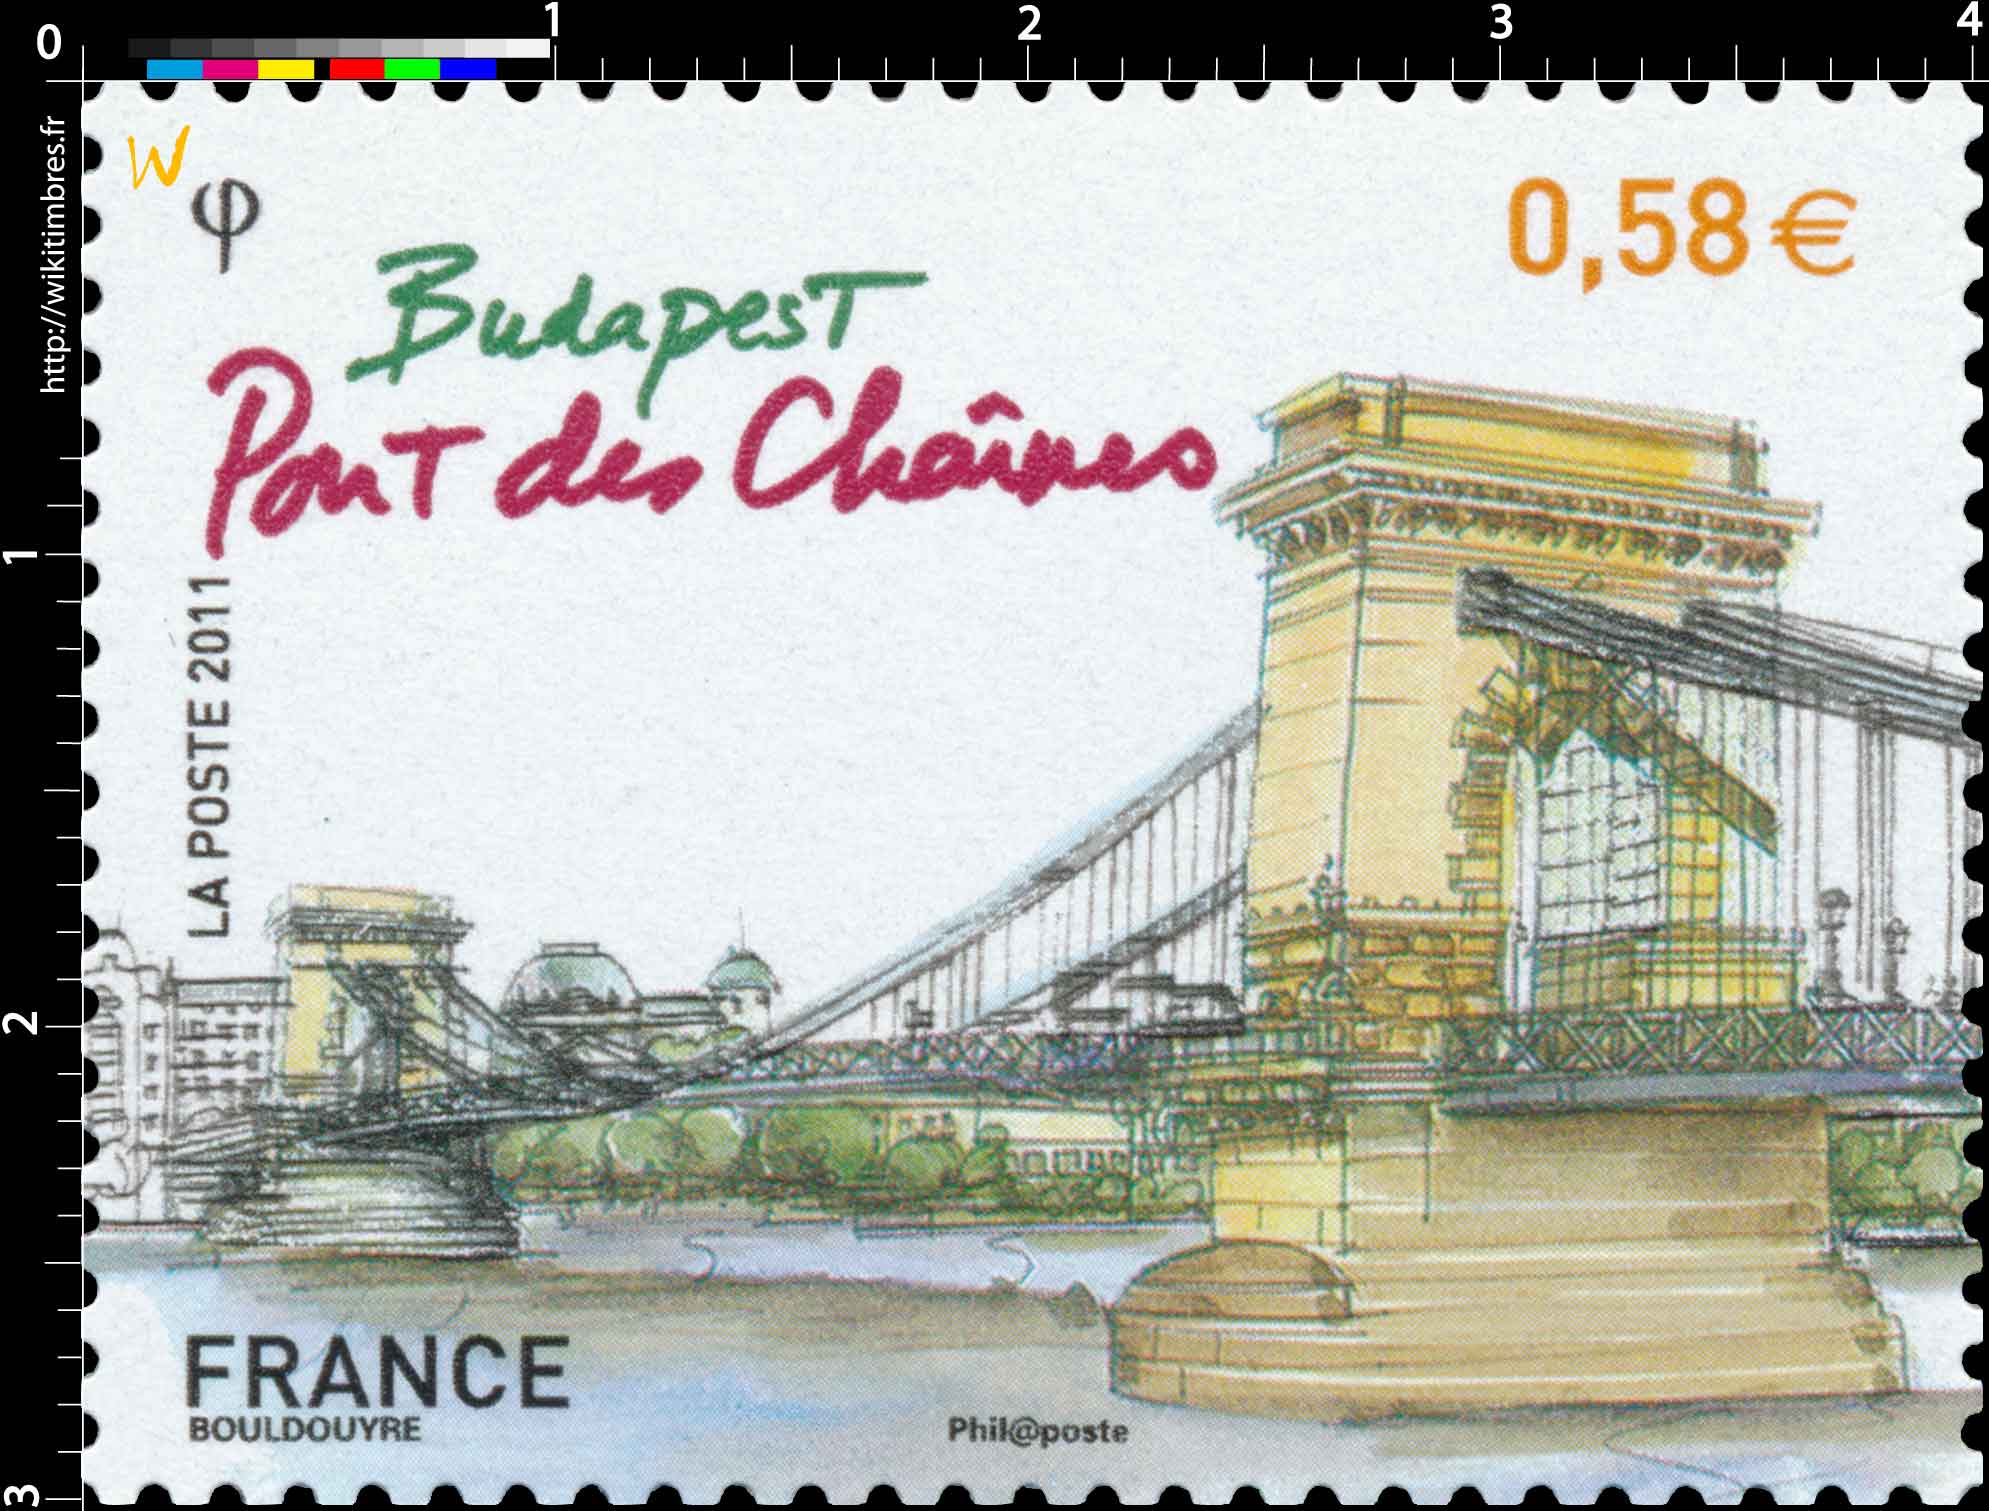 2011 Budapest Pont des chaînes